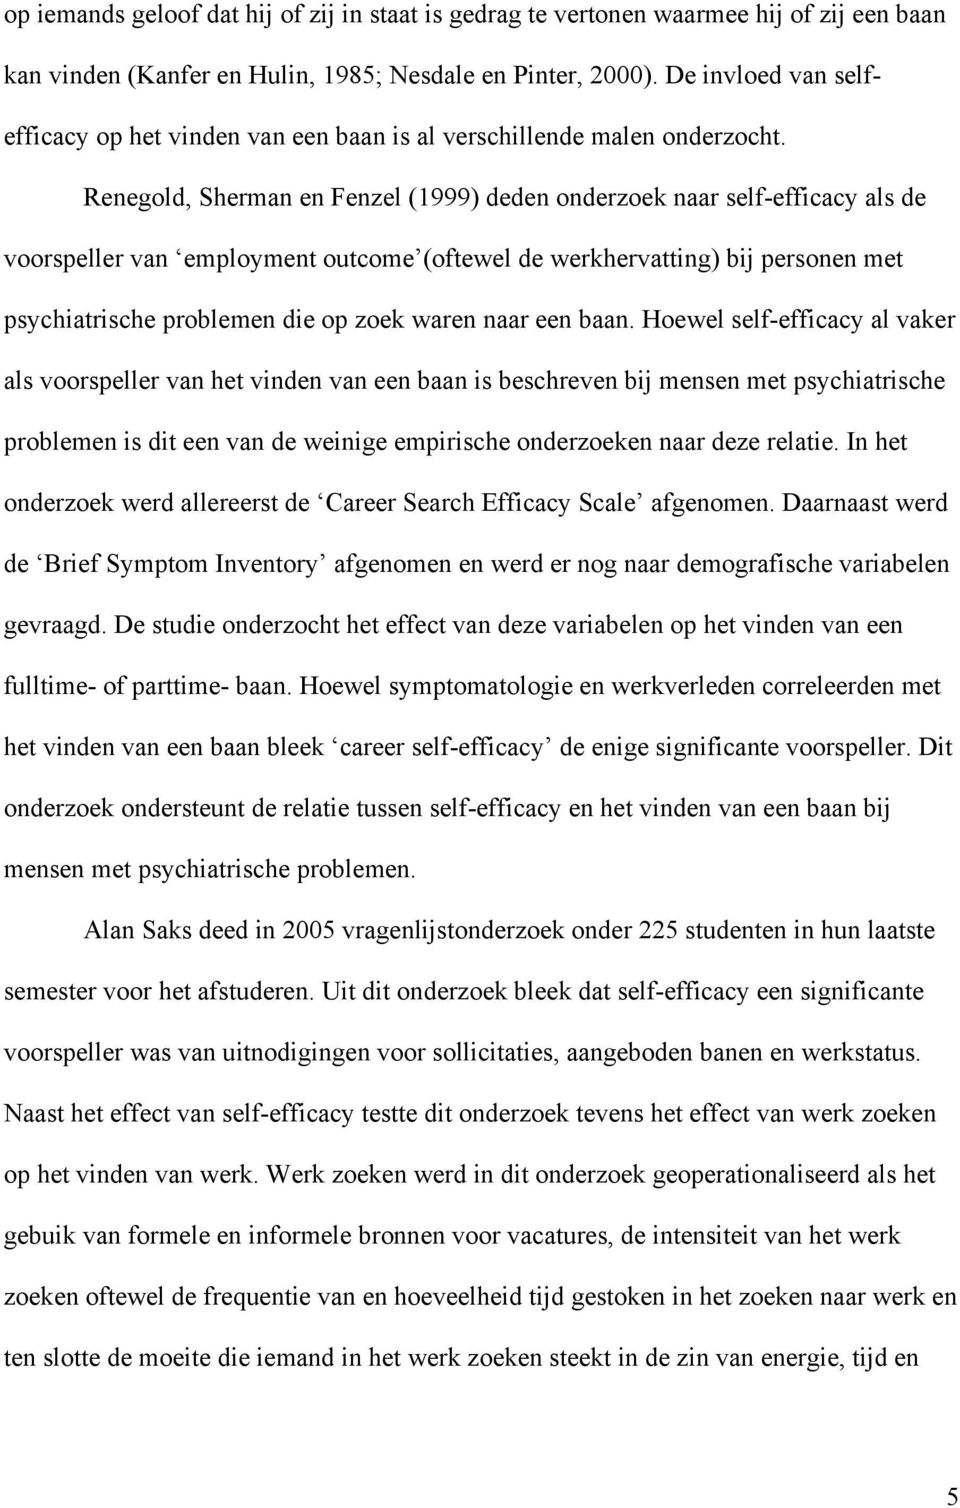 Renegold, Sherman en Fenzel (1999) deden onderzoek naar self-efficacy als de voorspeller van employment outcome (oftewel de werkhervatting) bij personen met psychiatrische problemen die op zoek waren